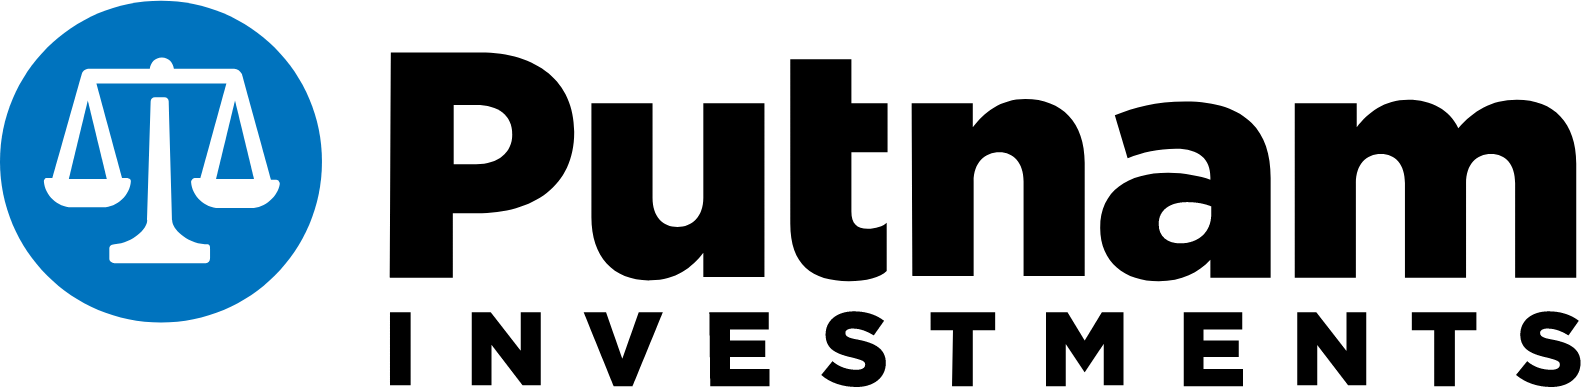 Putnam logo large (transparent PNG)